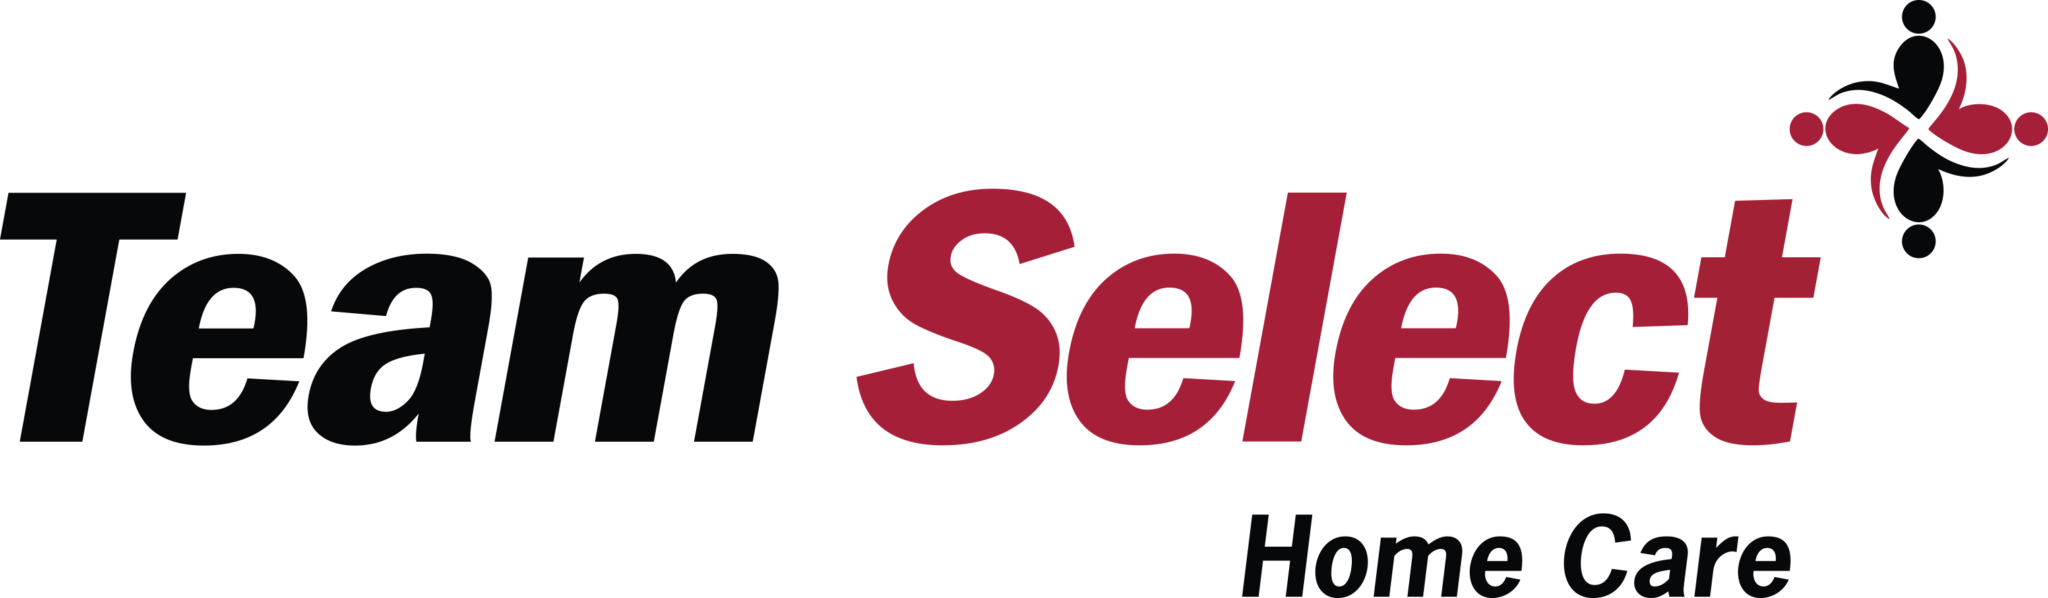 Silver - Team Select Logo